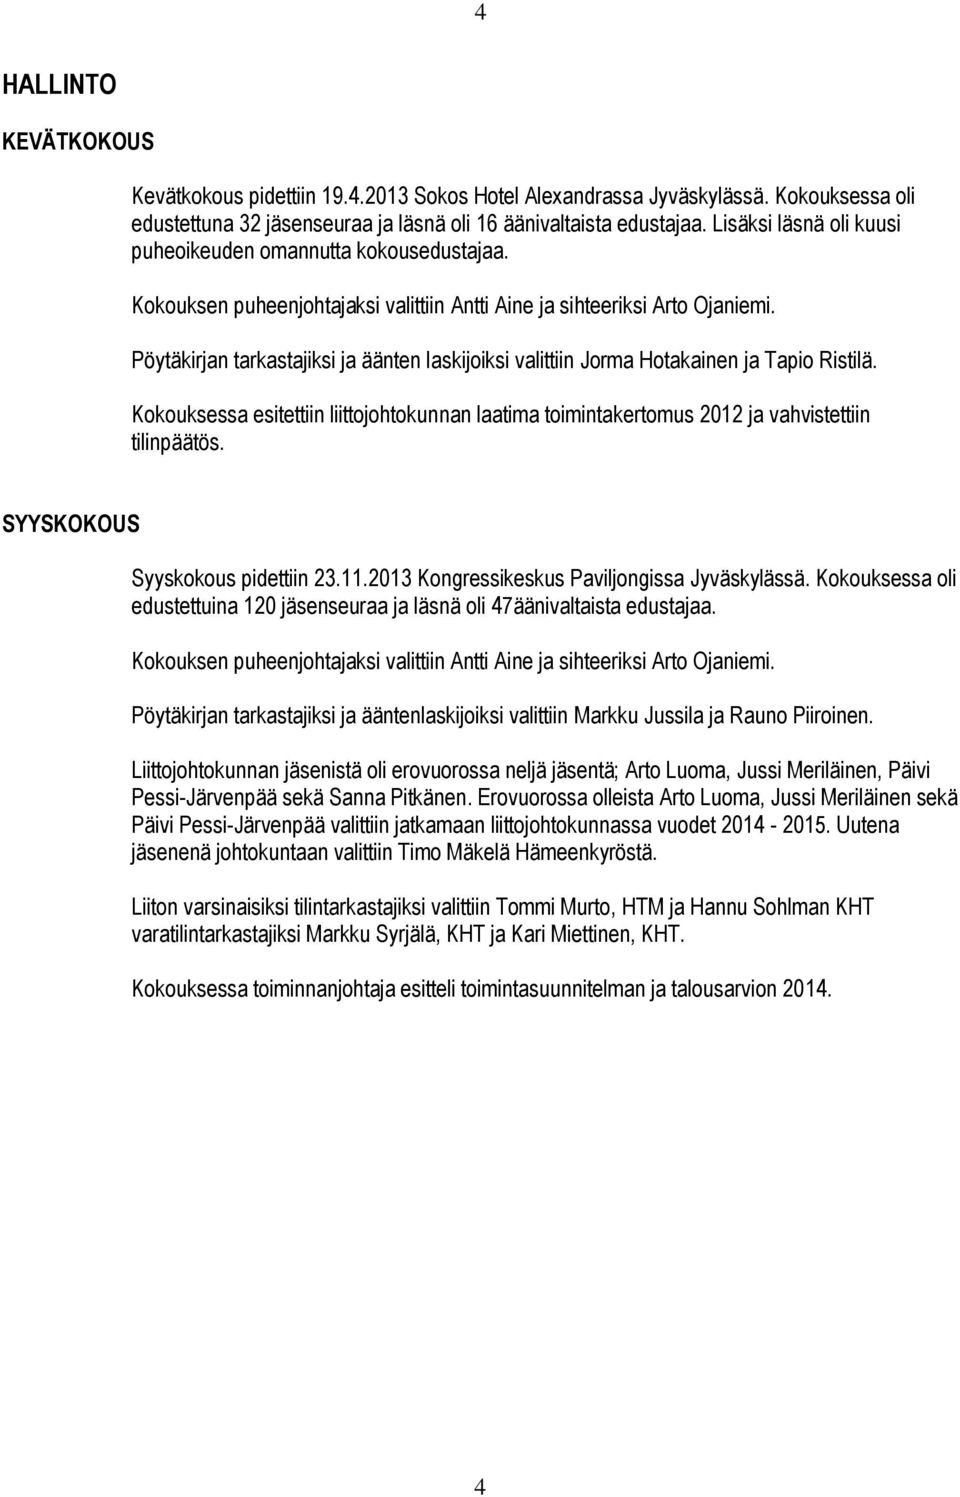 Pöytäkirjan tarkastajiksi ja äänten laskijoiksi valittiin Jorma Hotakainen ja Tapio Ristilä. Kokouksessa esitettiin liittojohtokunnan laatima toimintakertomus 2012 ja vahvistettiin tilinpäätös.